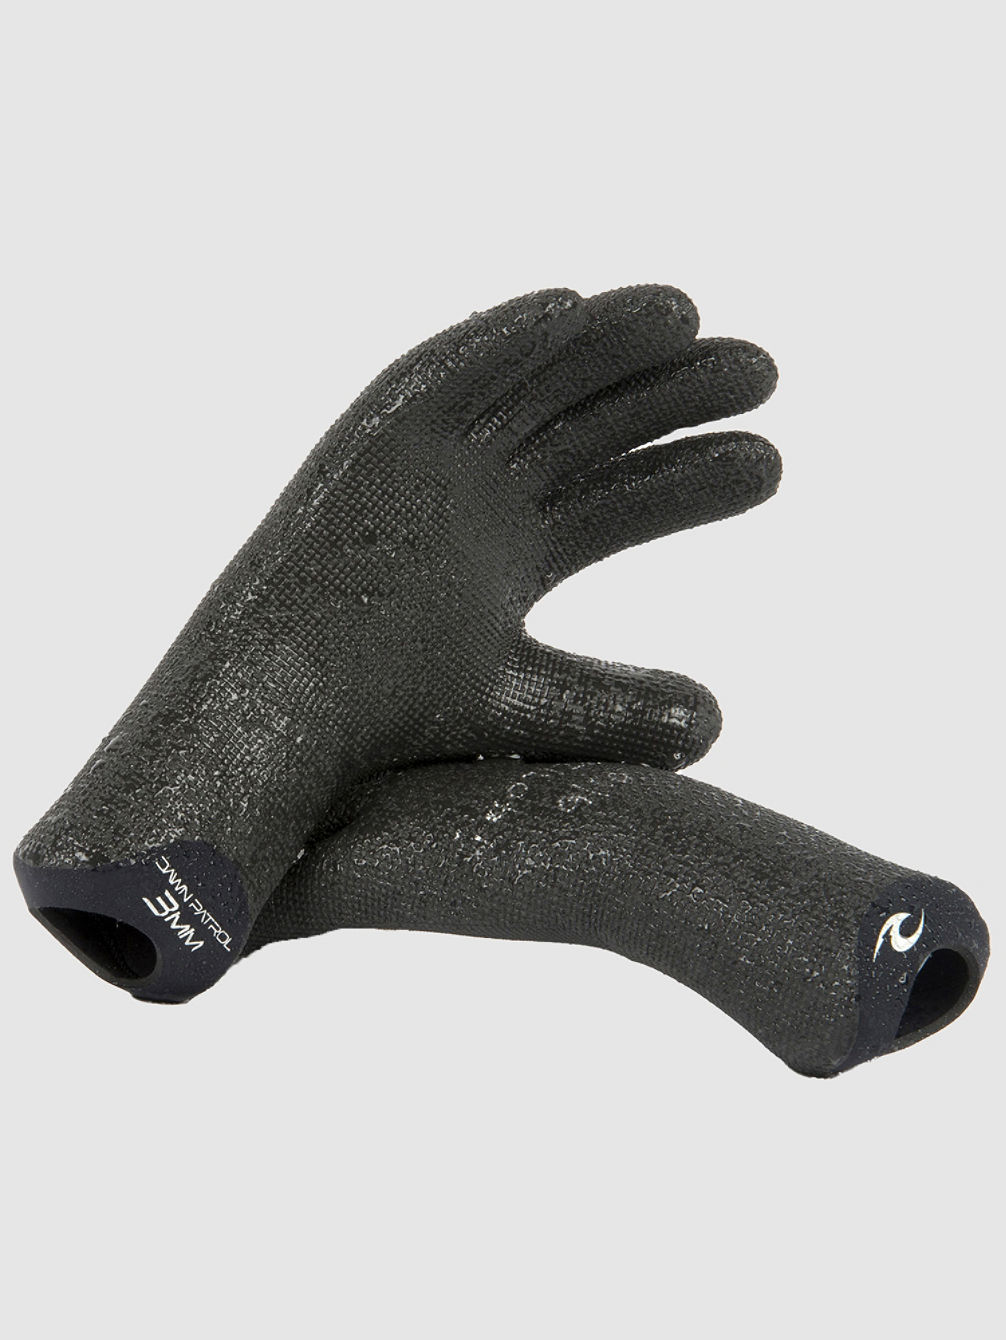 Dawn Patrol 3Mm Glove